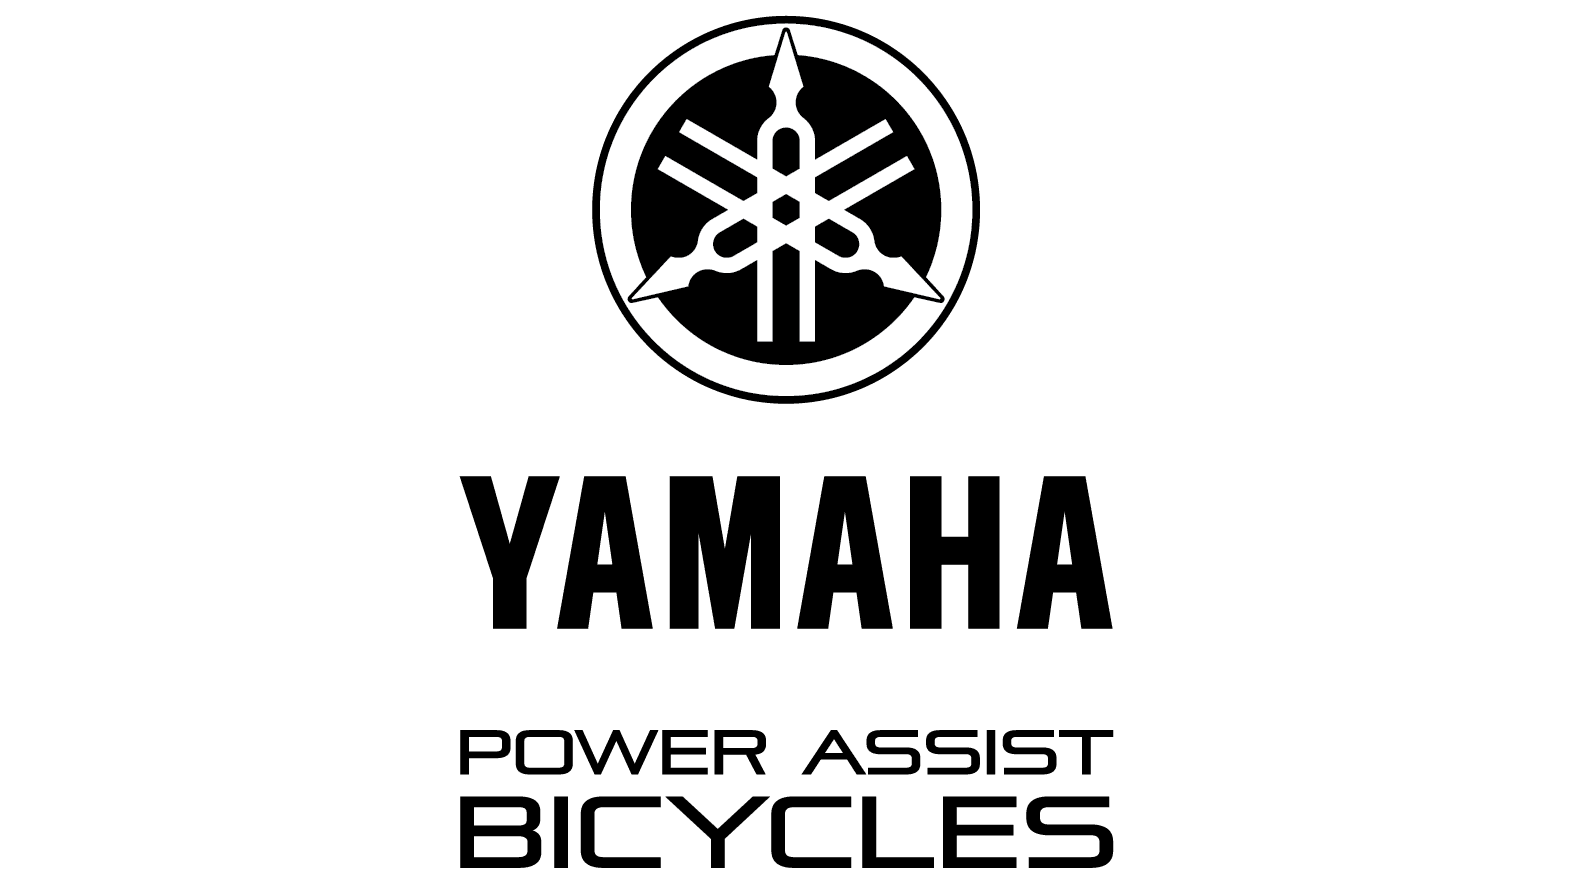 Yamaha-Bikes-1-e1597935883746